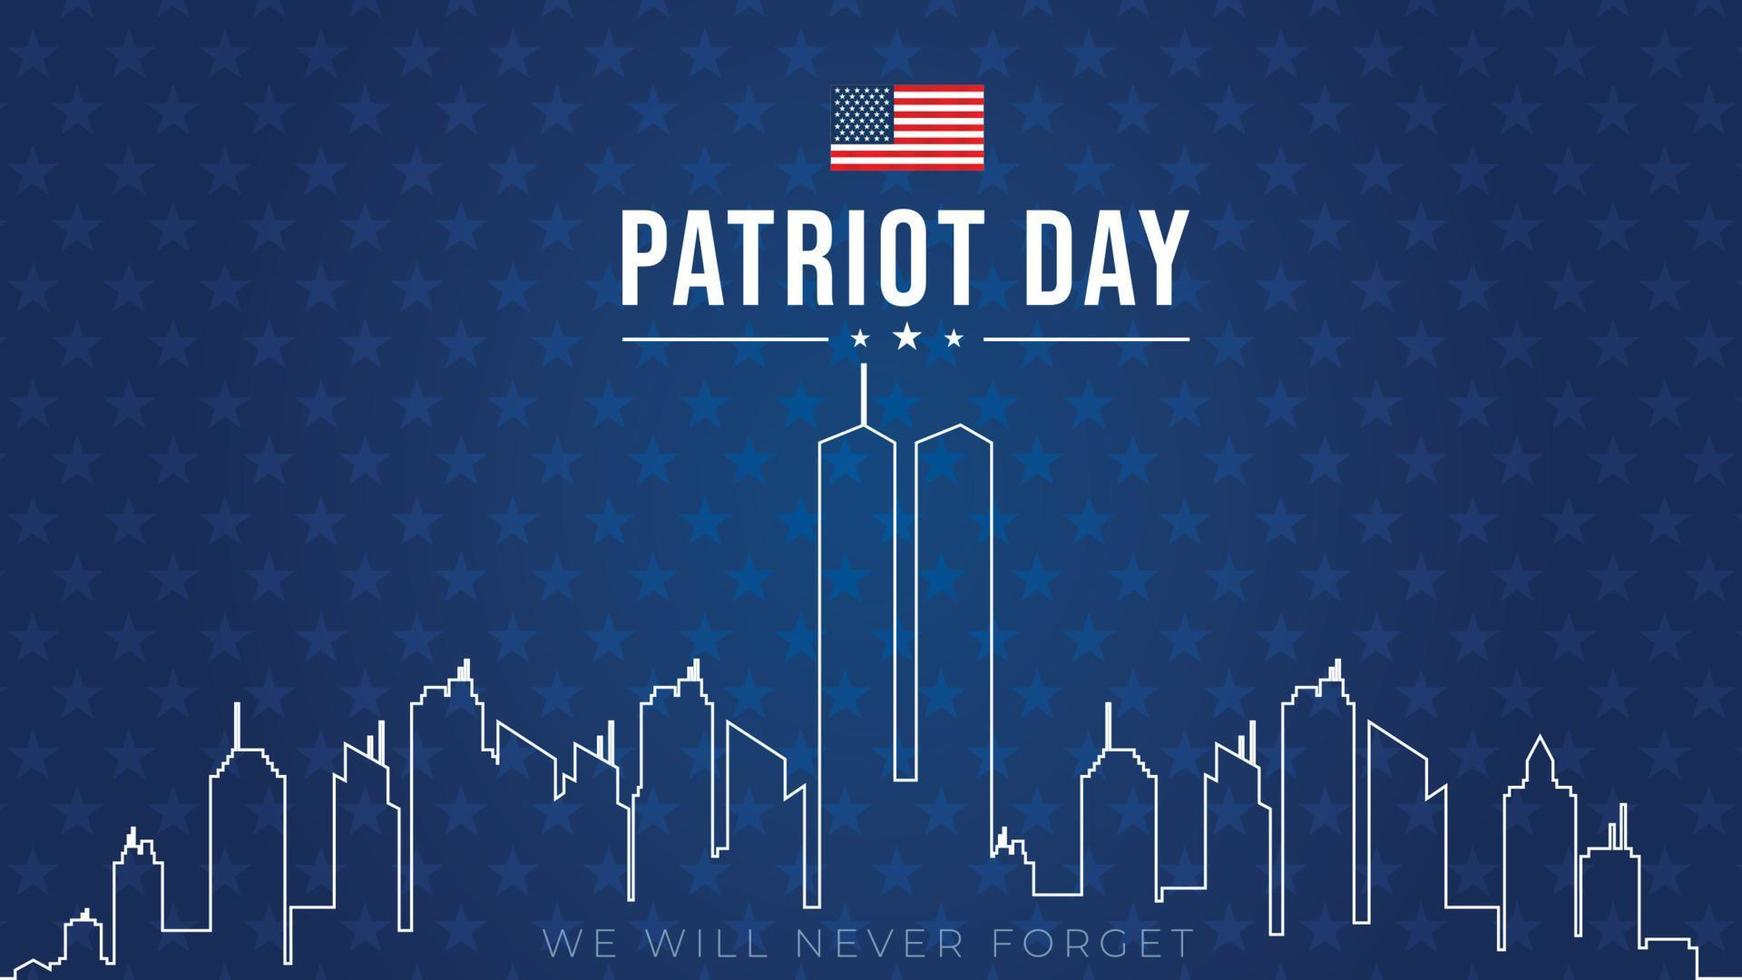 torres gêmeas no horizonte da cidade de nova york. cartaz vetorial de 11 de setembro de 2001. dia do patriota, 11 de setembro, nunca esqueceremos, fundo com silhueta de nova york. vetor